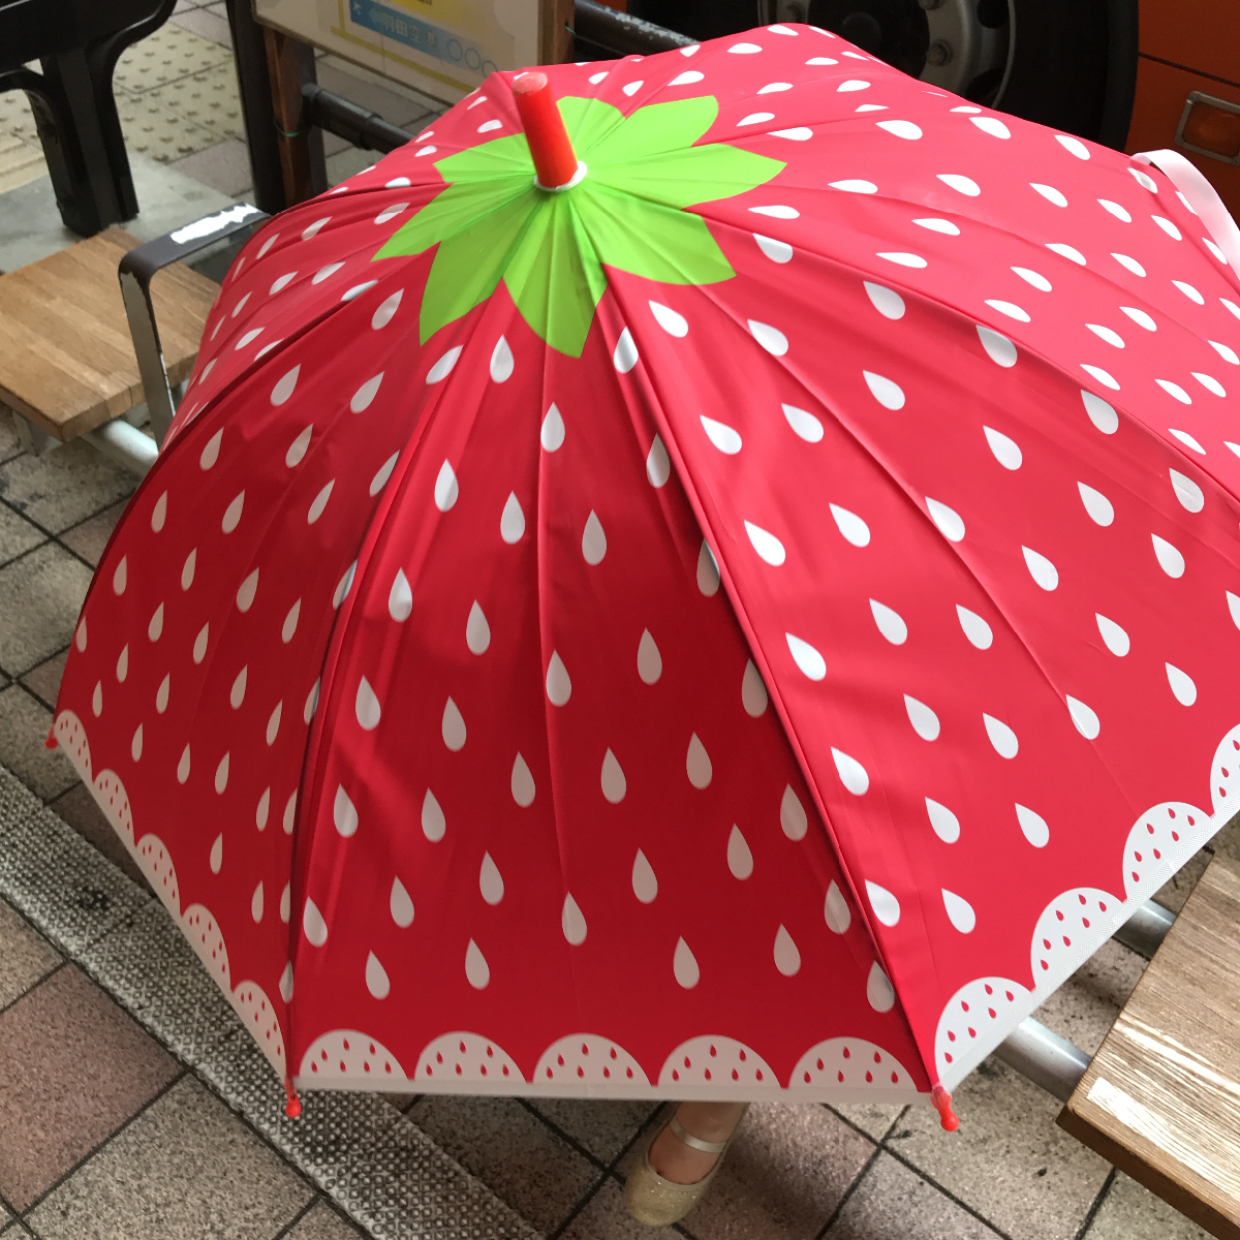  3COINSのフルーツキッズ傘が今年も登場♡雨の日が楽しくなりそう♪ 